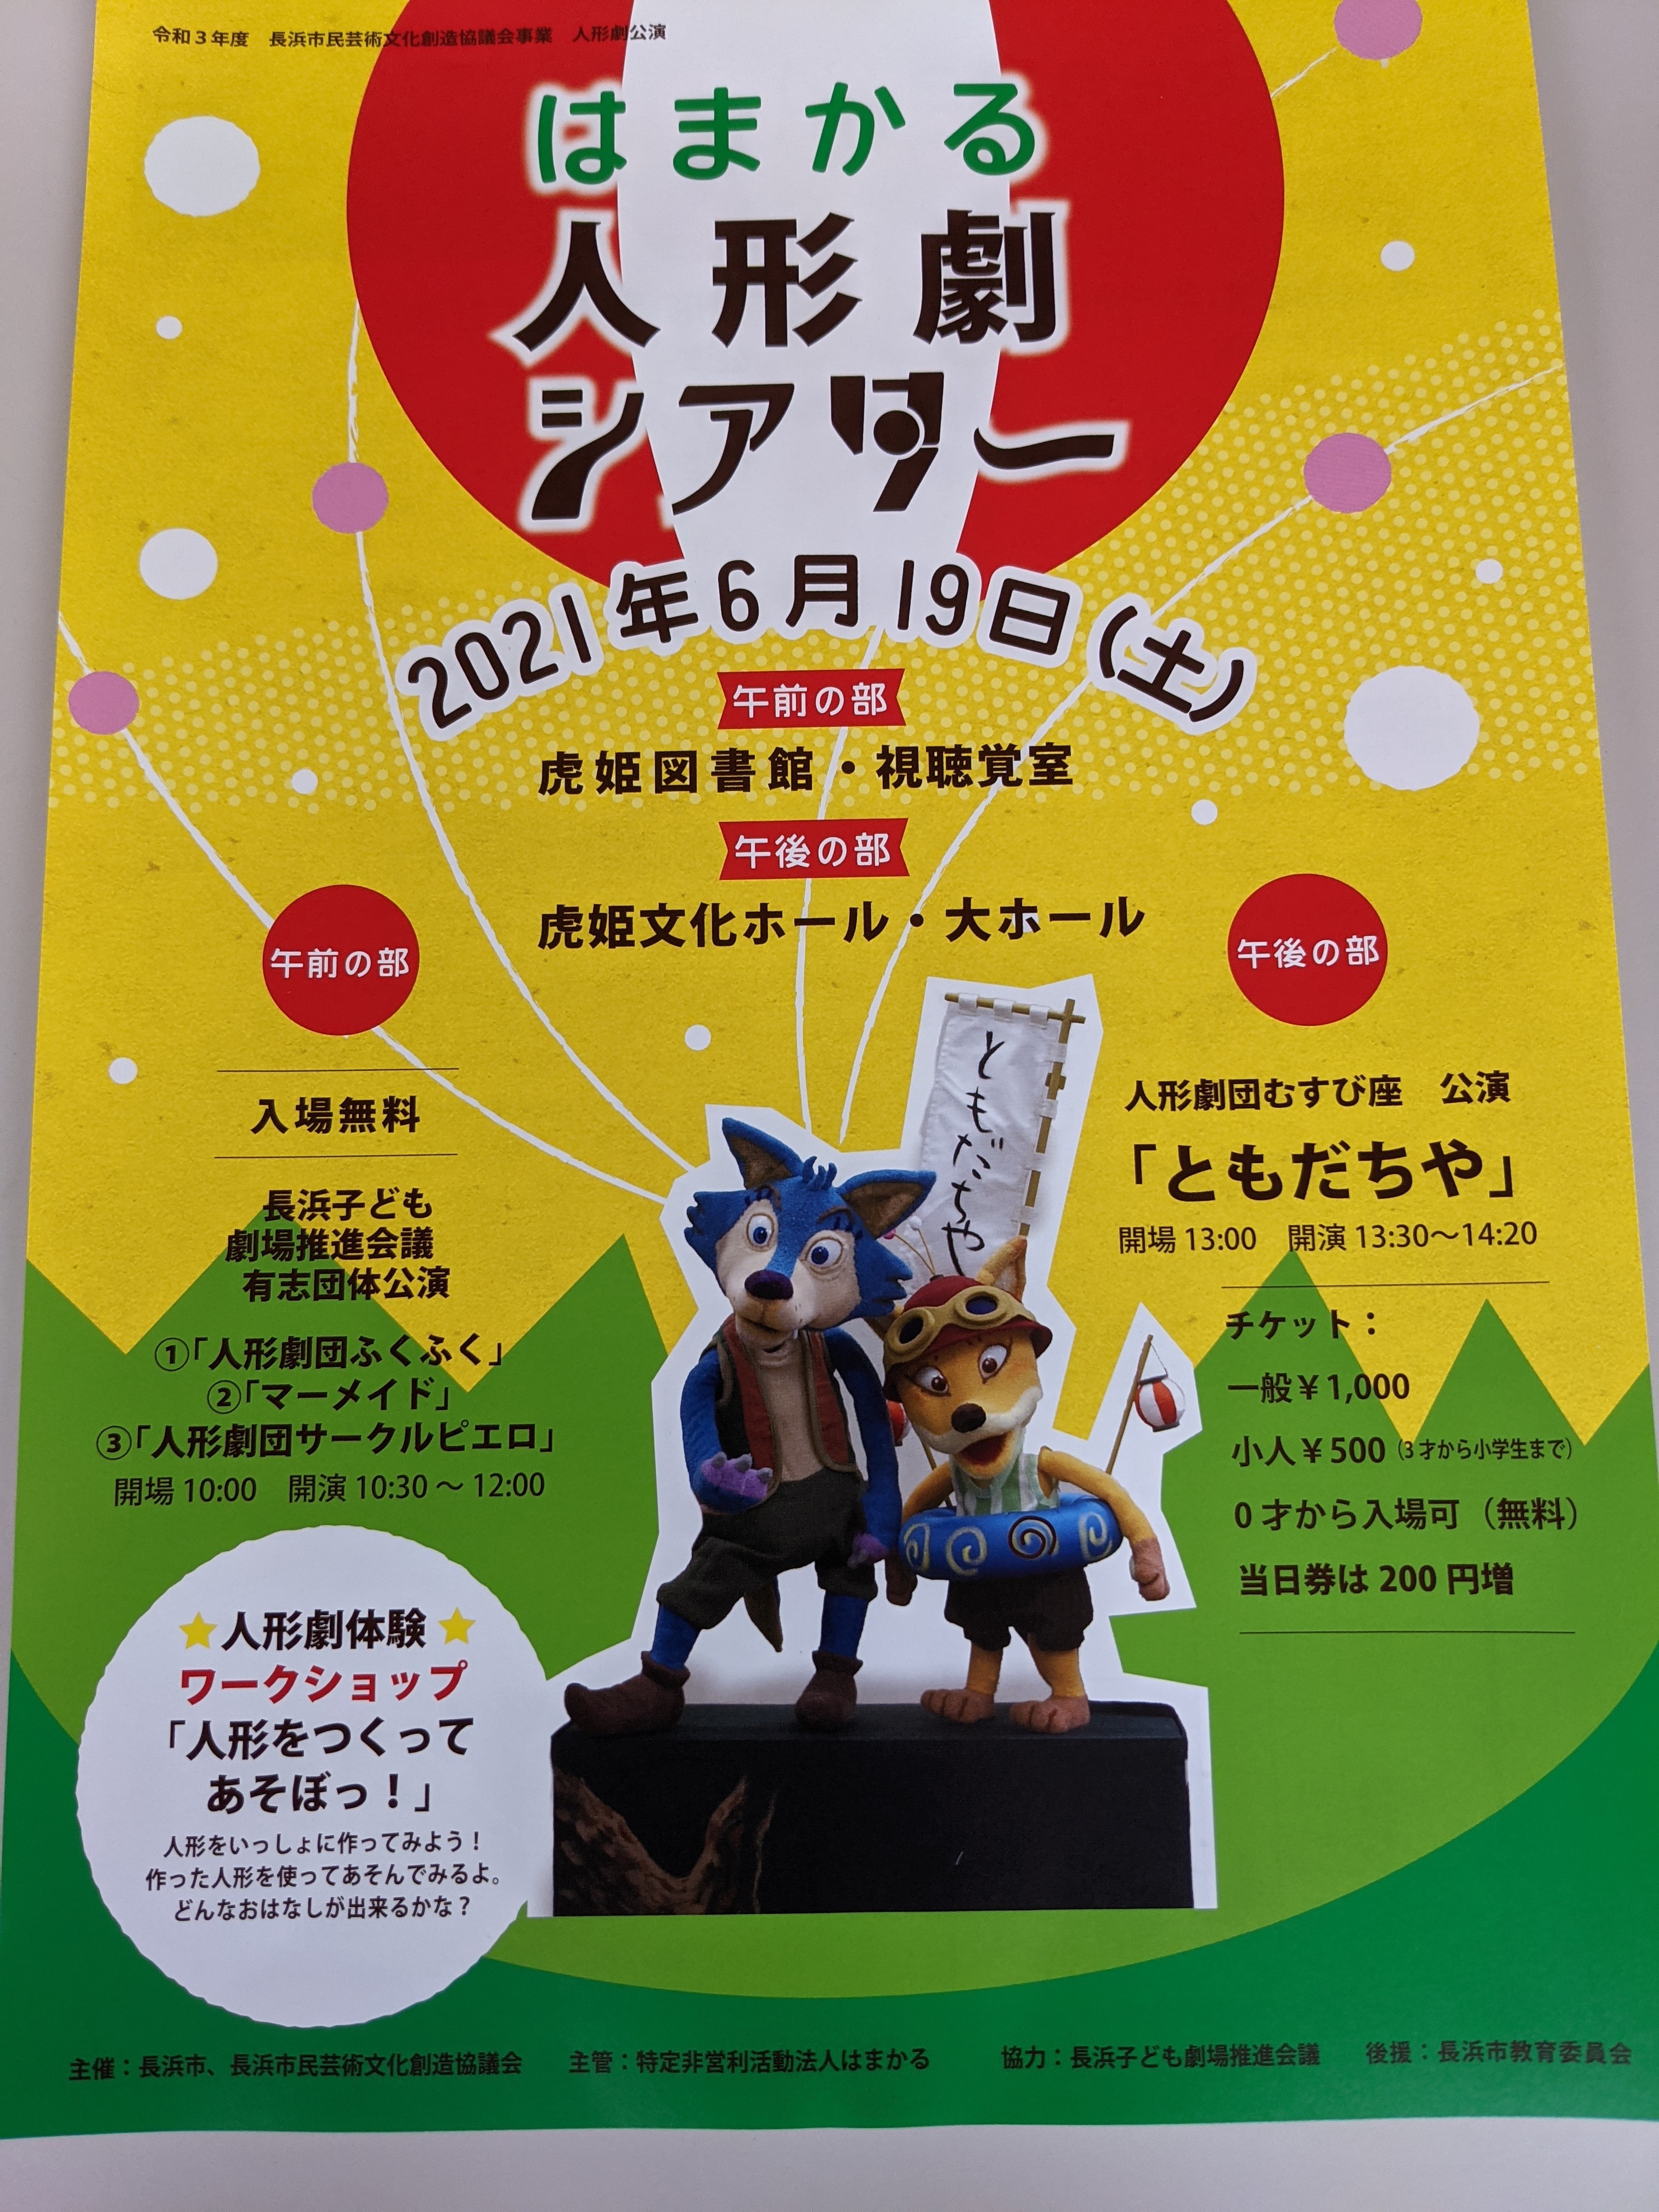 【6月19日】はまかる人形劇シアターが開催されます。人形劇団むすび座による公演や、人形をつくるワークショップも♪